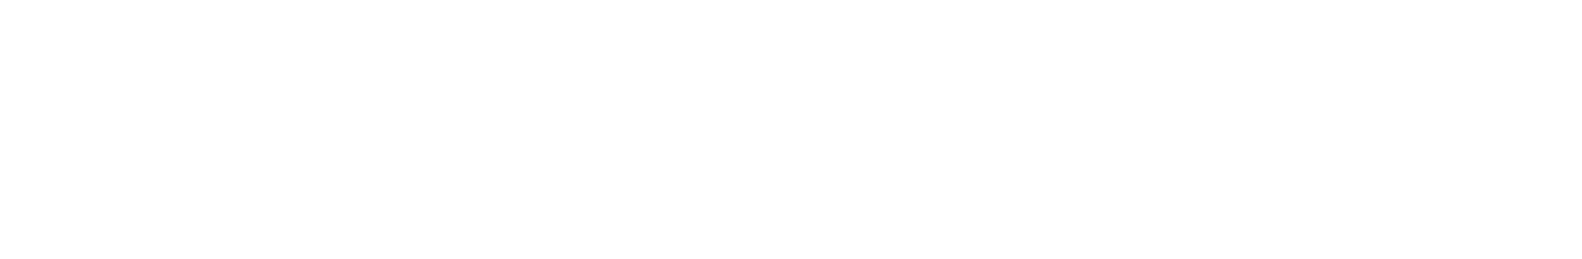 Japan Post Bank
 logo grand pour les fonds sombres (PNG transparent)